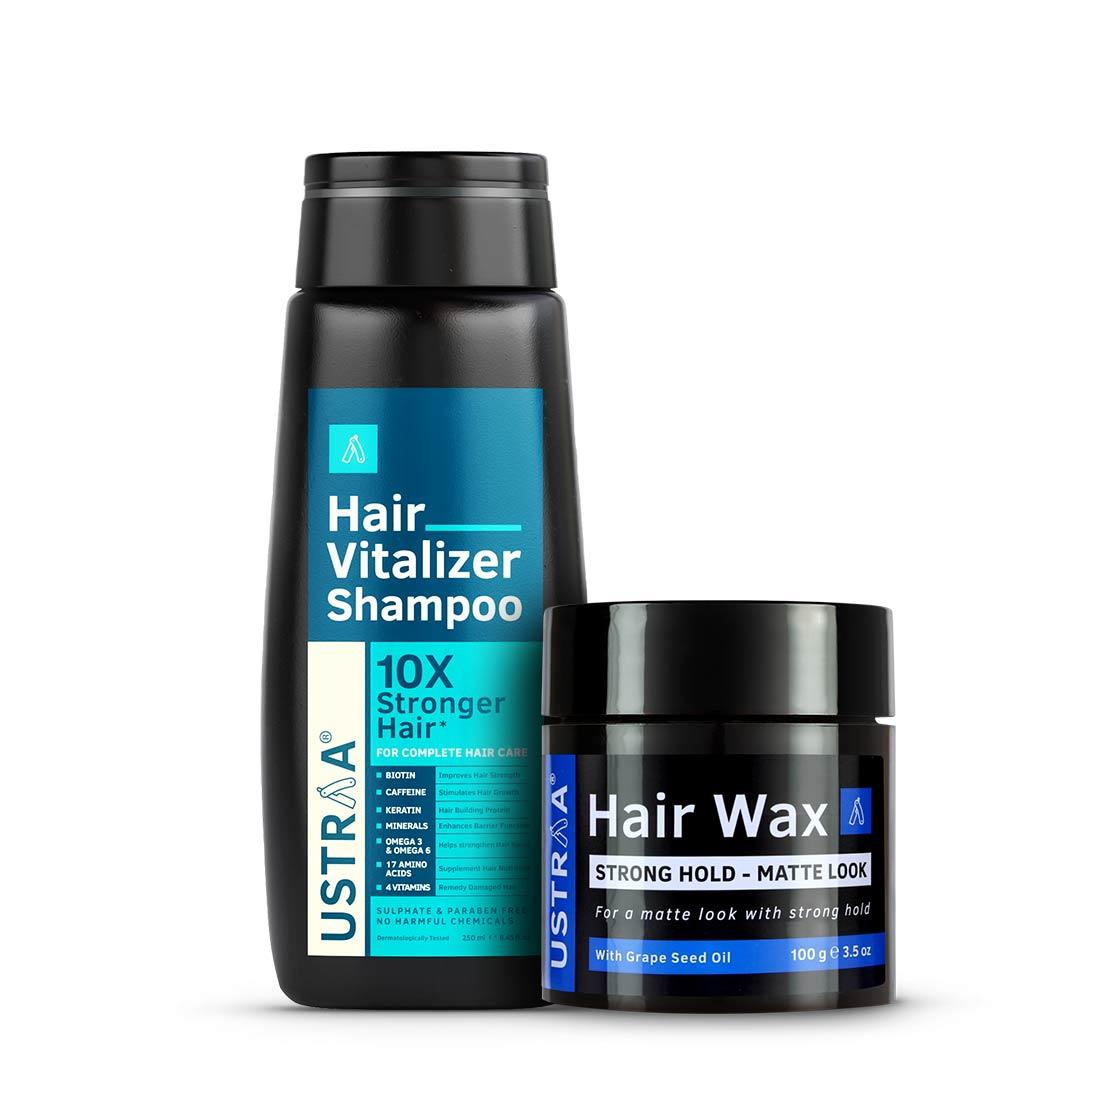 Hair Vitalizer Shampoo & Hair Wax Matte Look